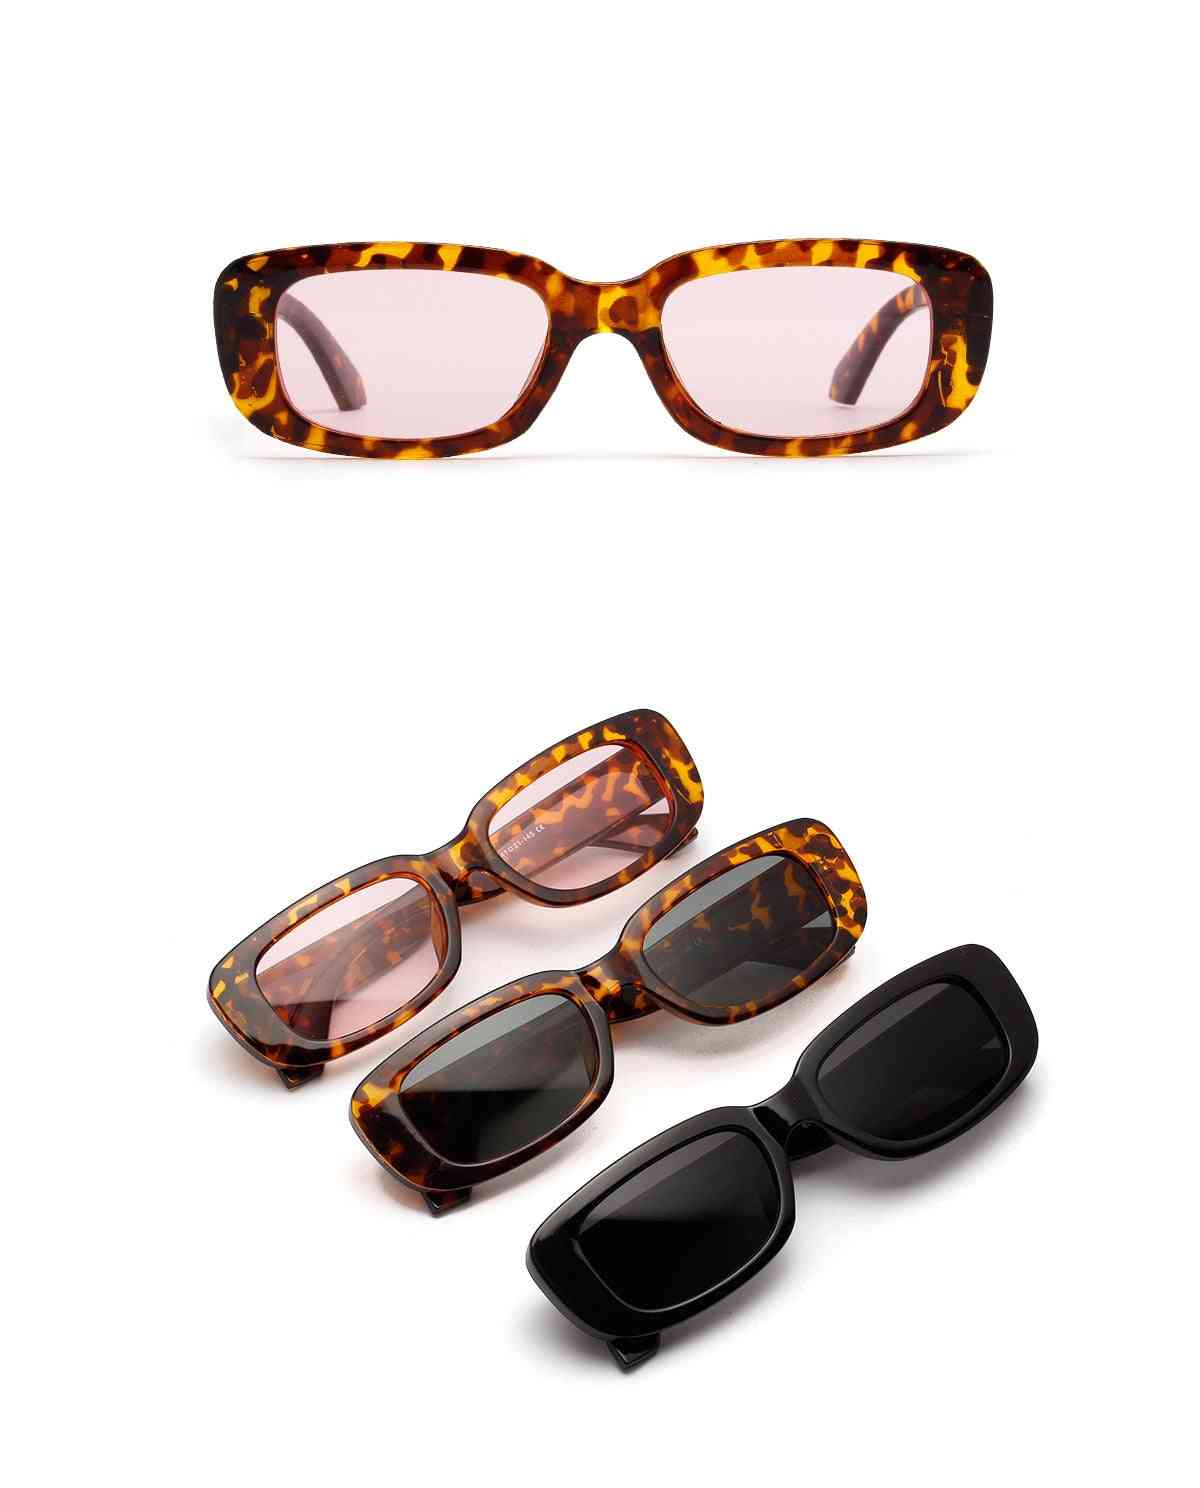 Lunettes de soleil à boîte courte, petites lunettes de soleil rétro léopard pour femmes